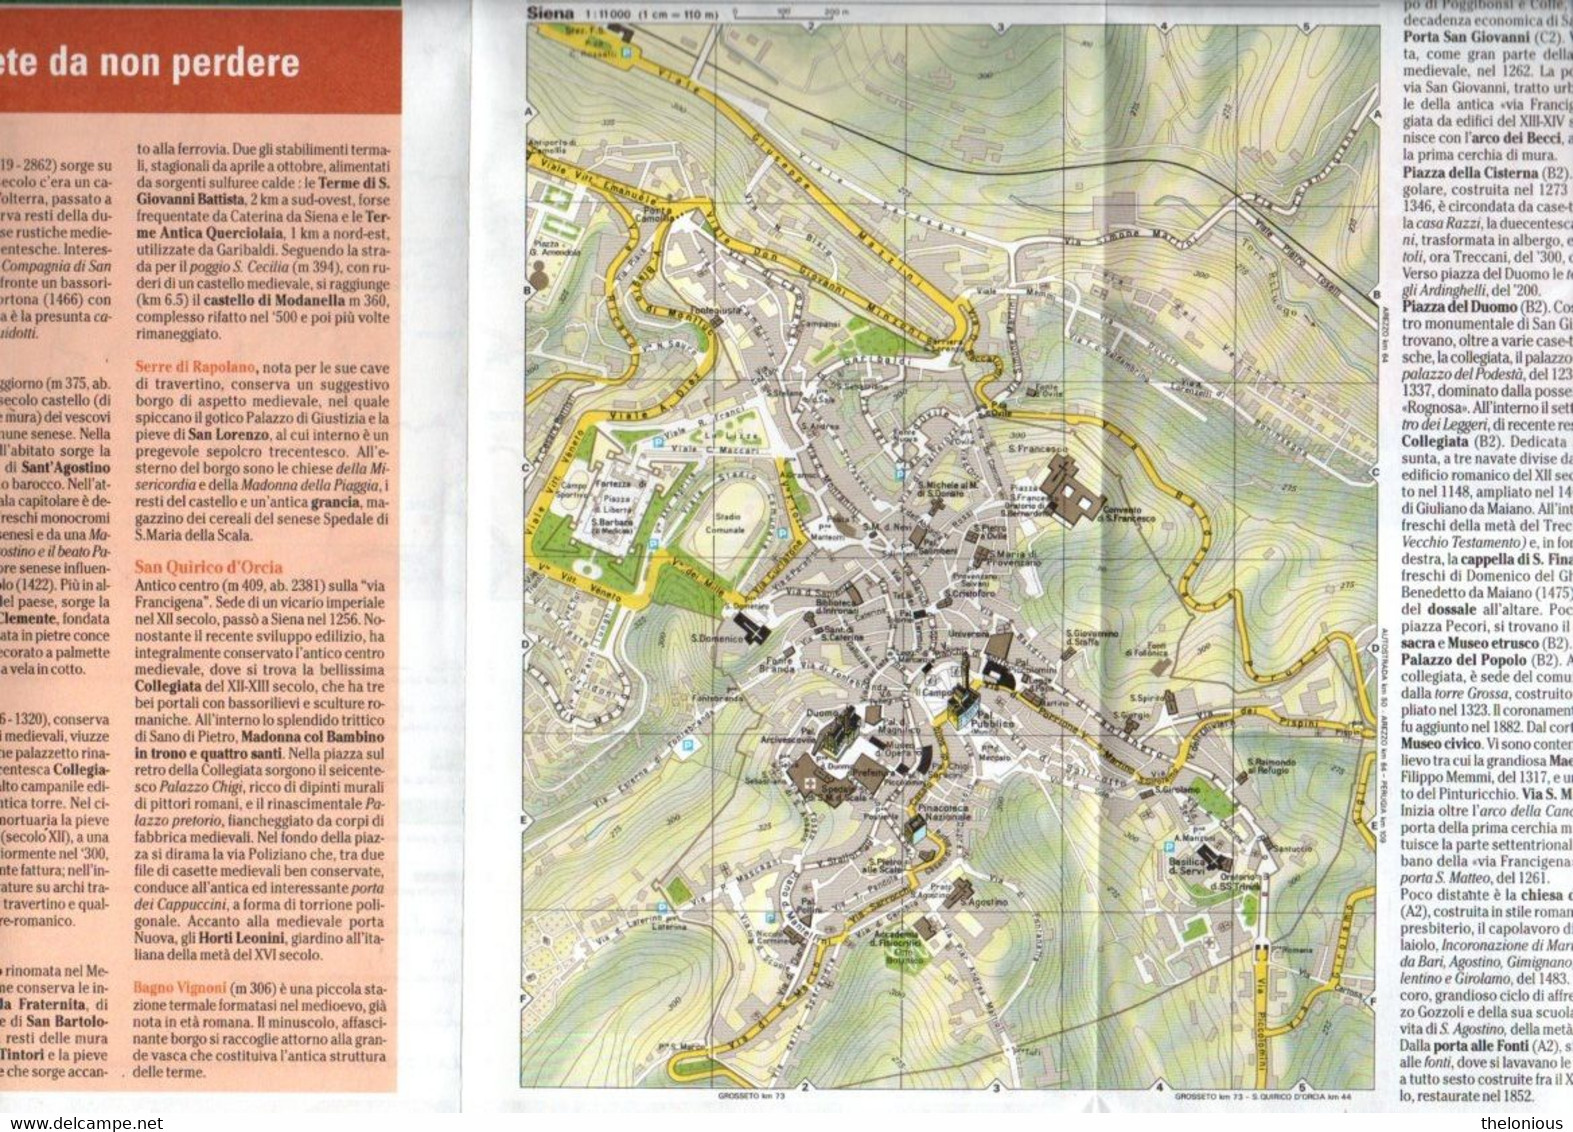 # La Terra Di Siena - 1:200:000 - Carta E Guida Turistica Degli Itinerari - Turismo, Viaggi